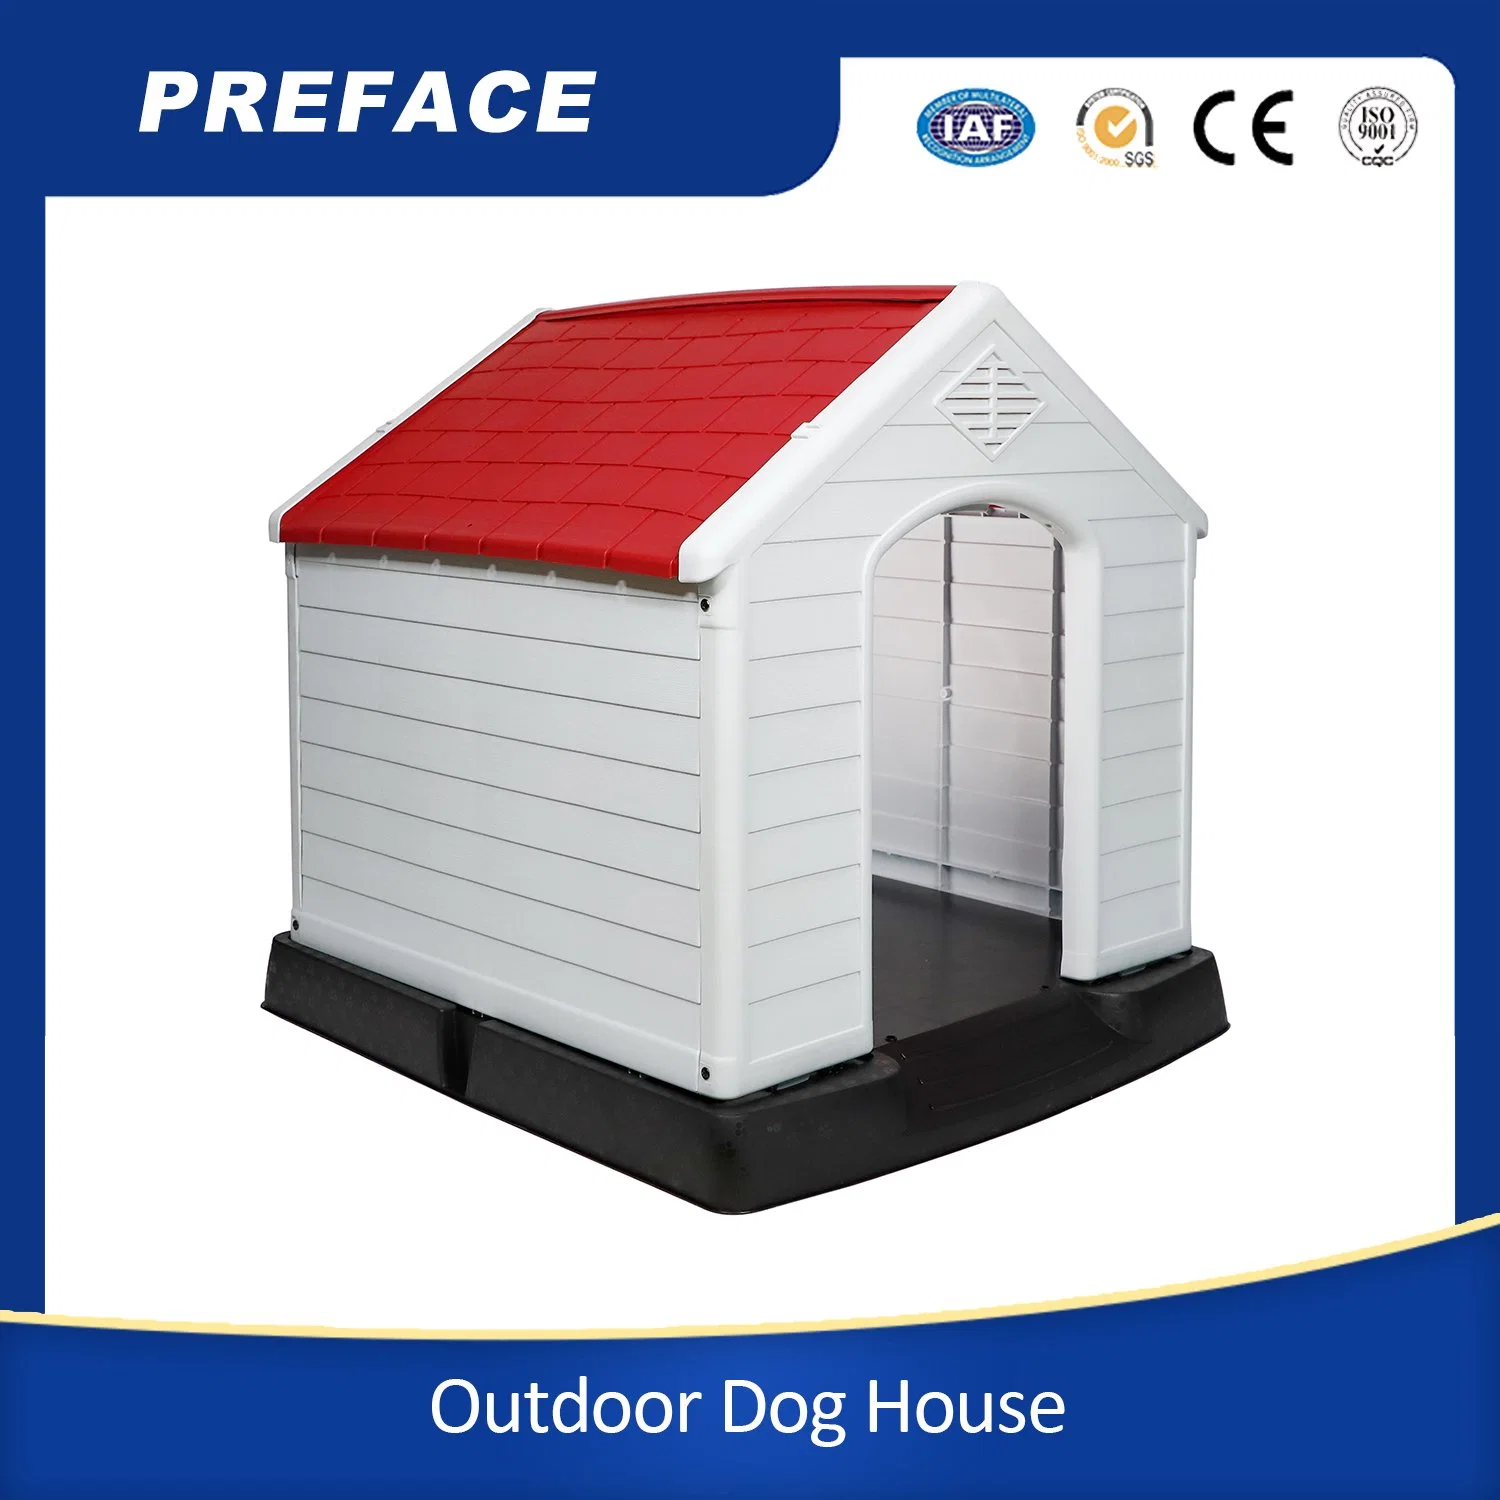 Водонепроницаемый и вентилируемый питомник для собак-собак All Weather Dog House Уличный пластиковый дом для собак из ПЭТ